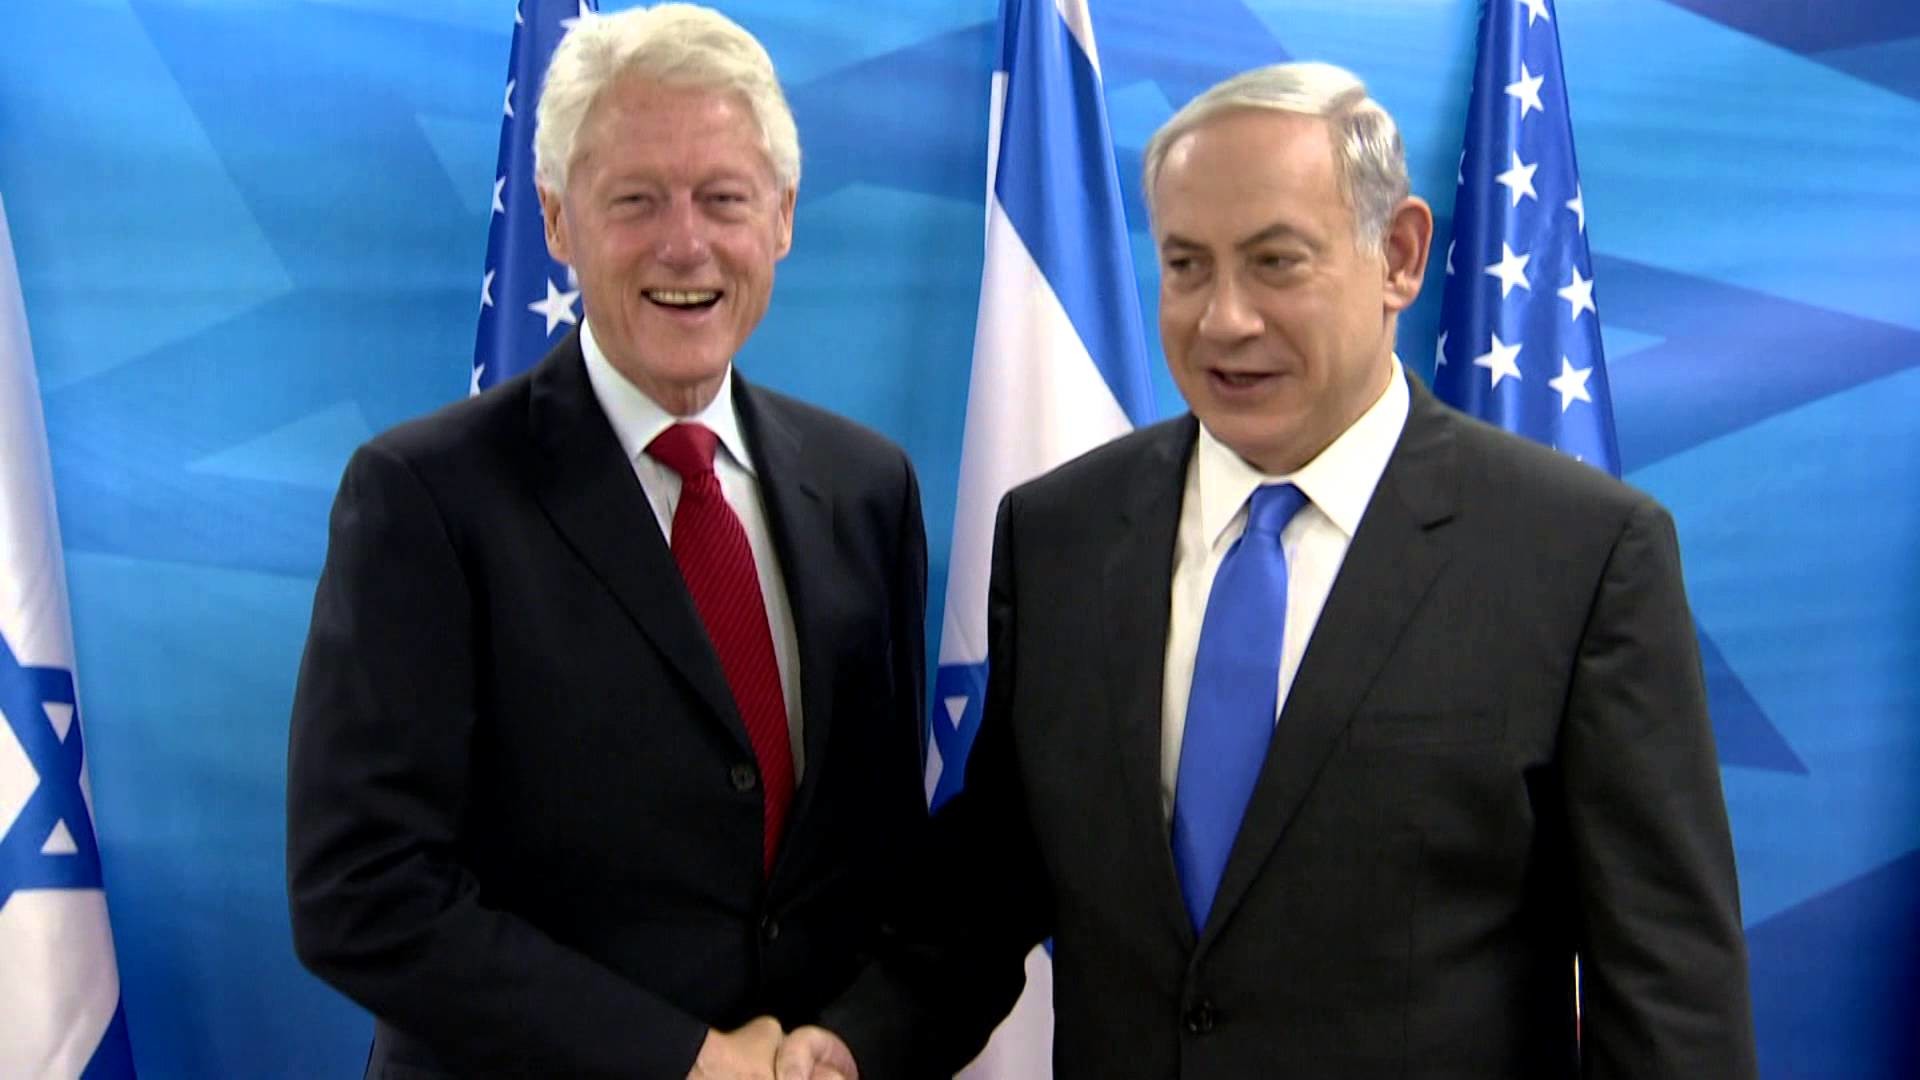 PM Netanyahu meets Bill Clinton